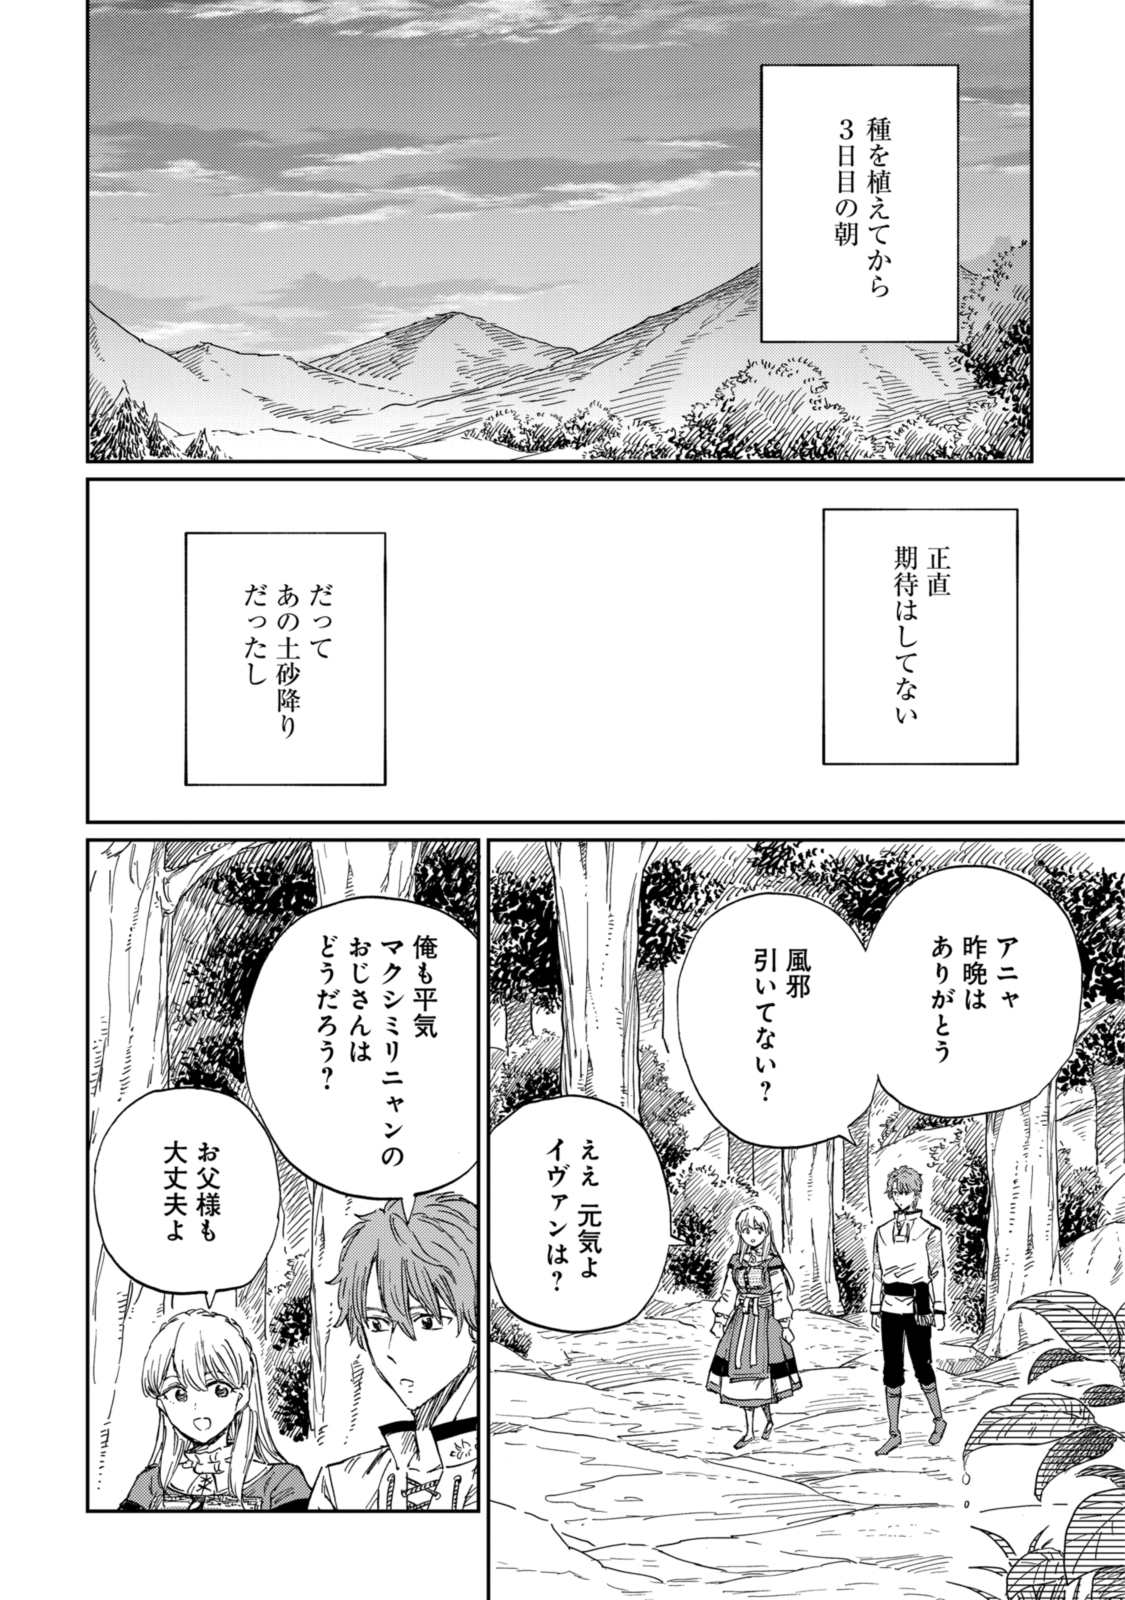 Youhou-ka to Mitsu Kusushi no Hanayome - Chapter 8.2 - Page 4